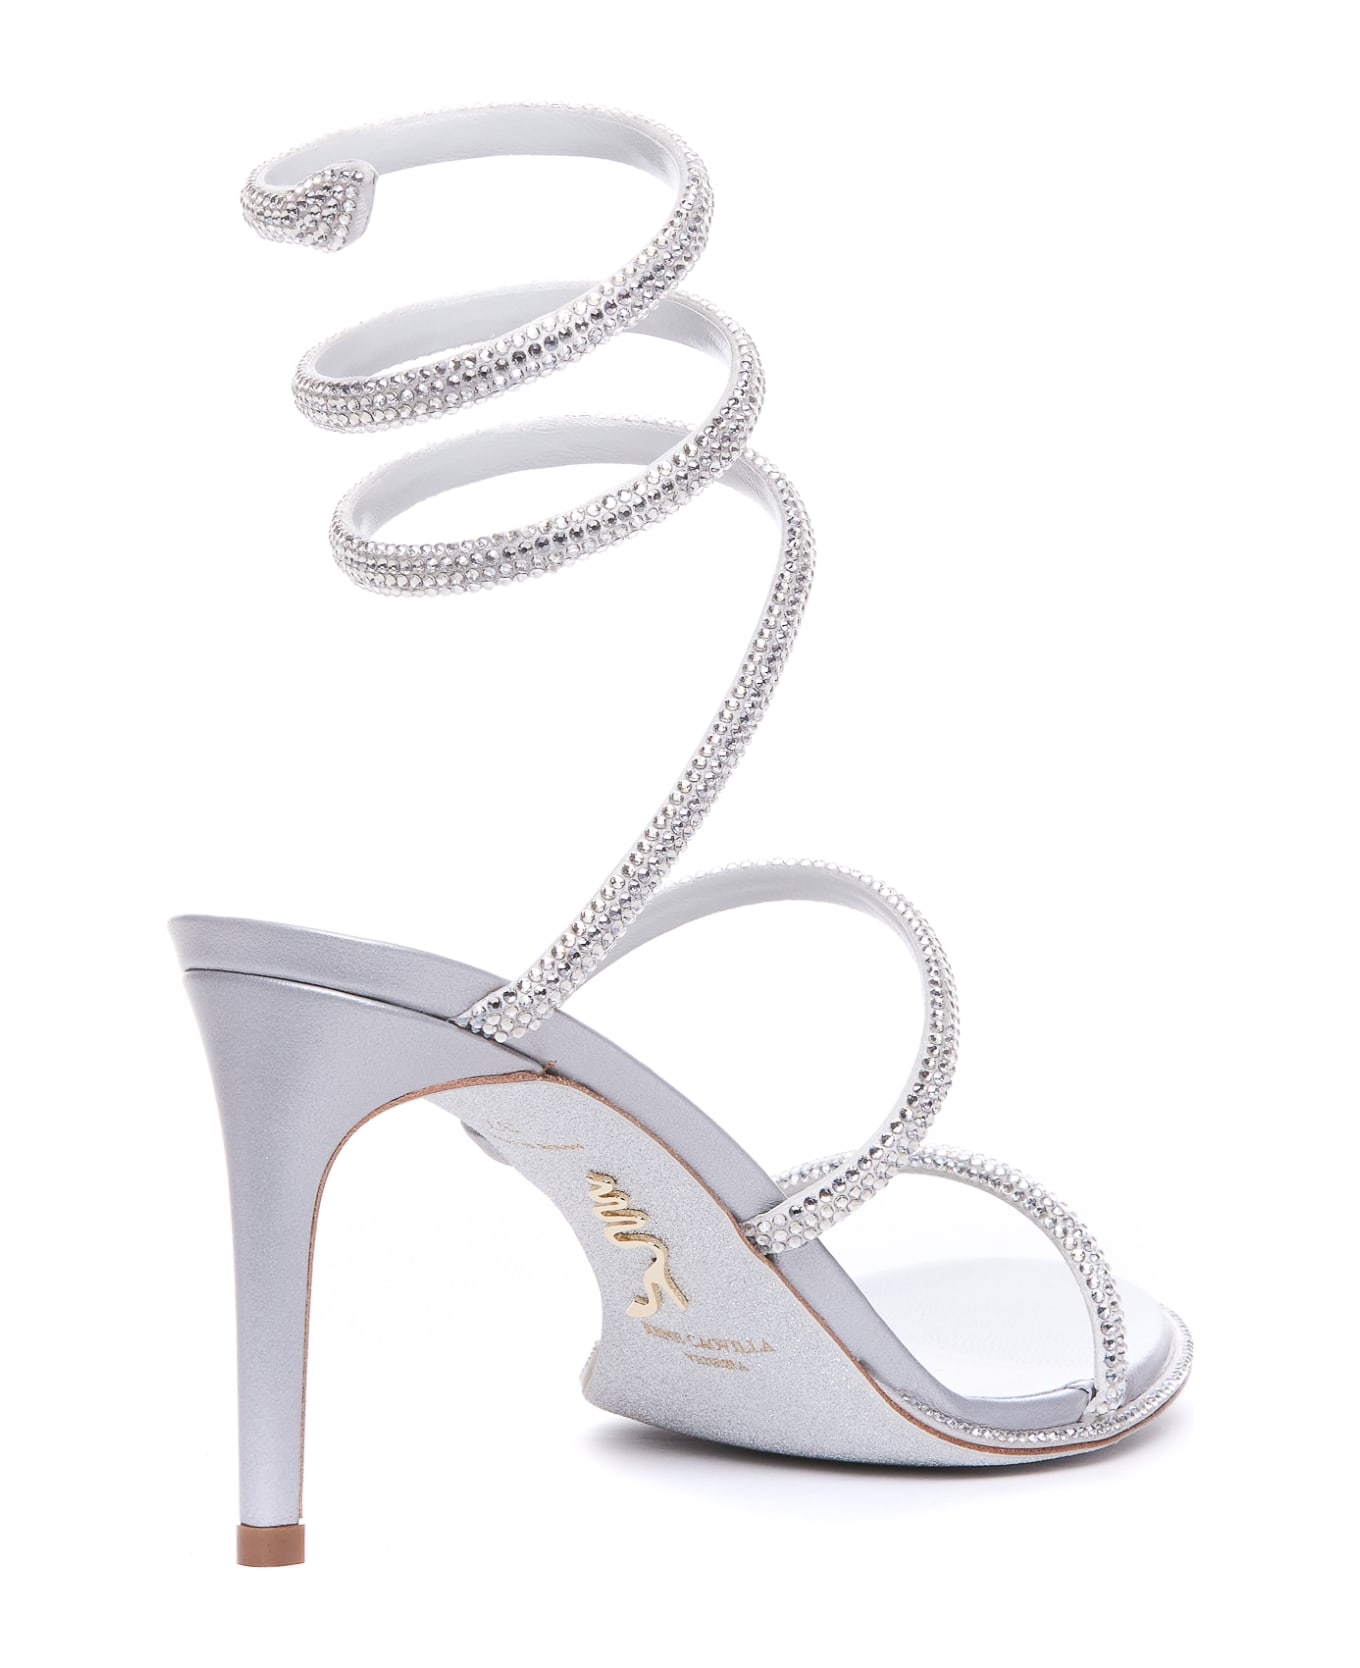 René Caovilla Cleo Pump Sandals - Silver